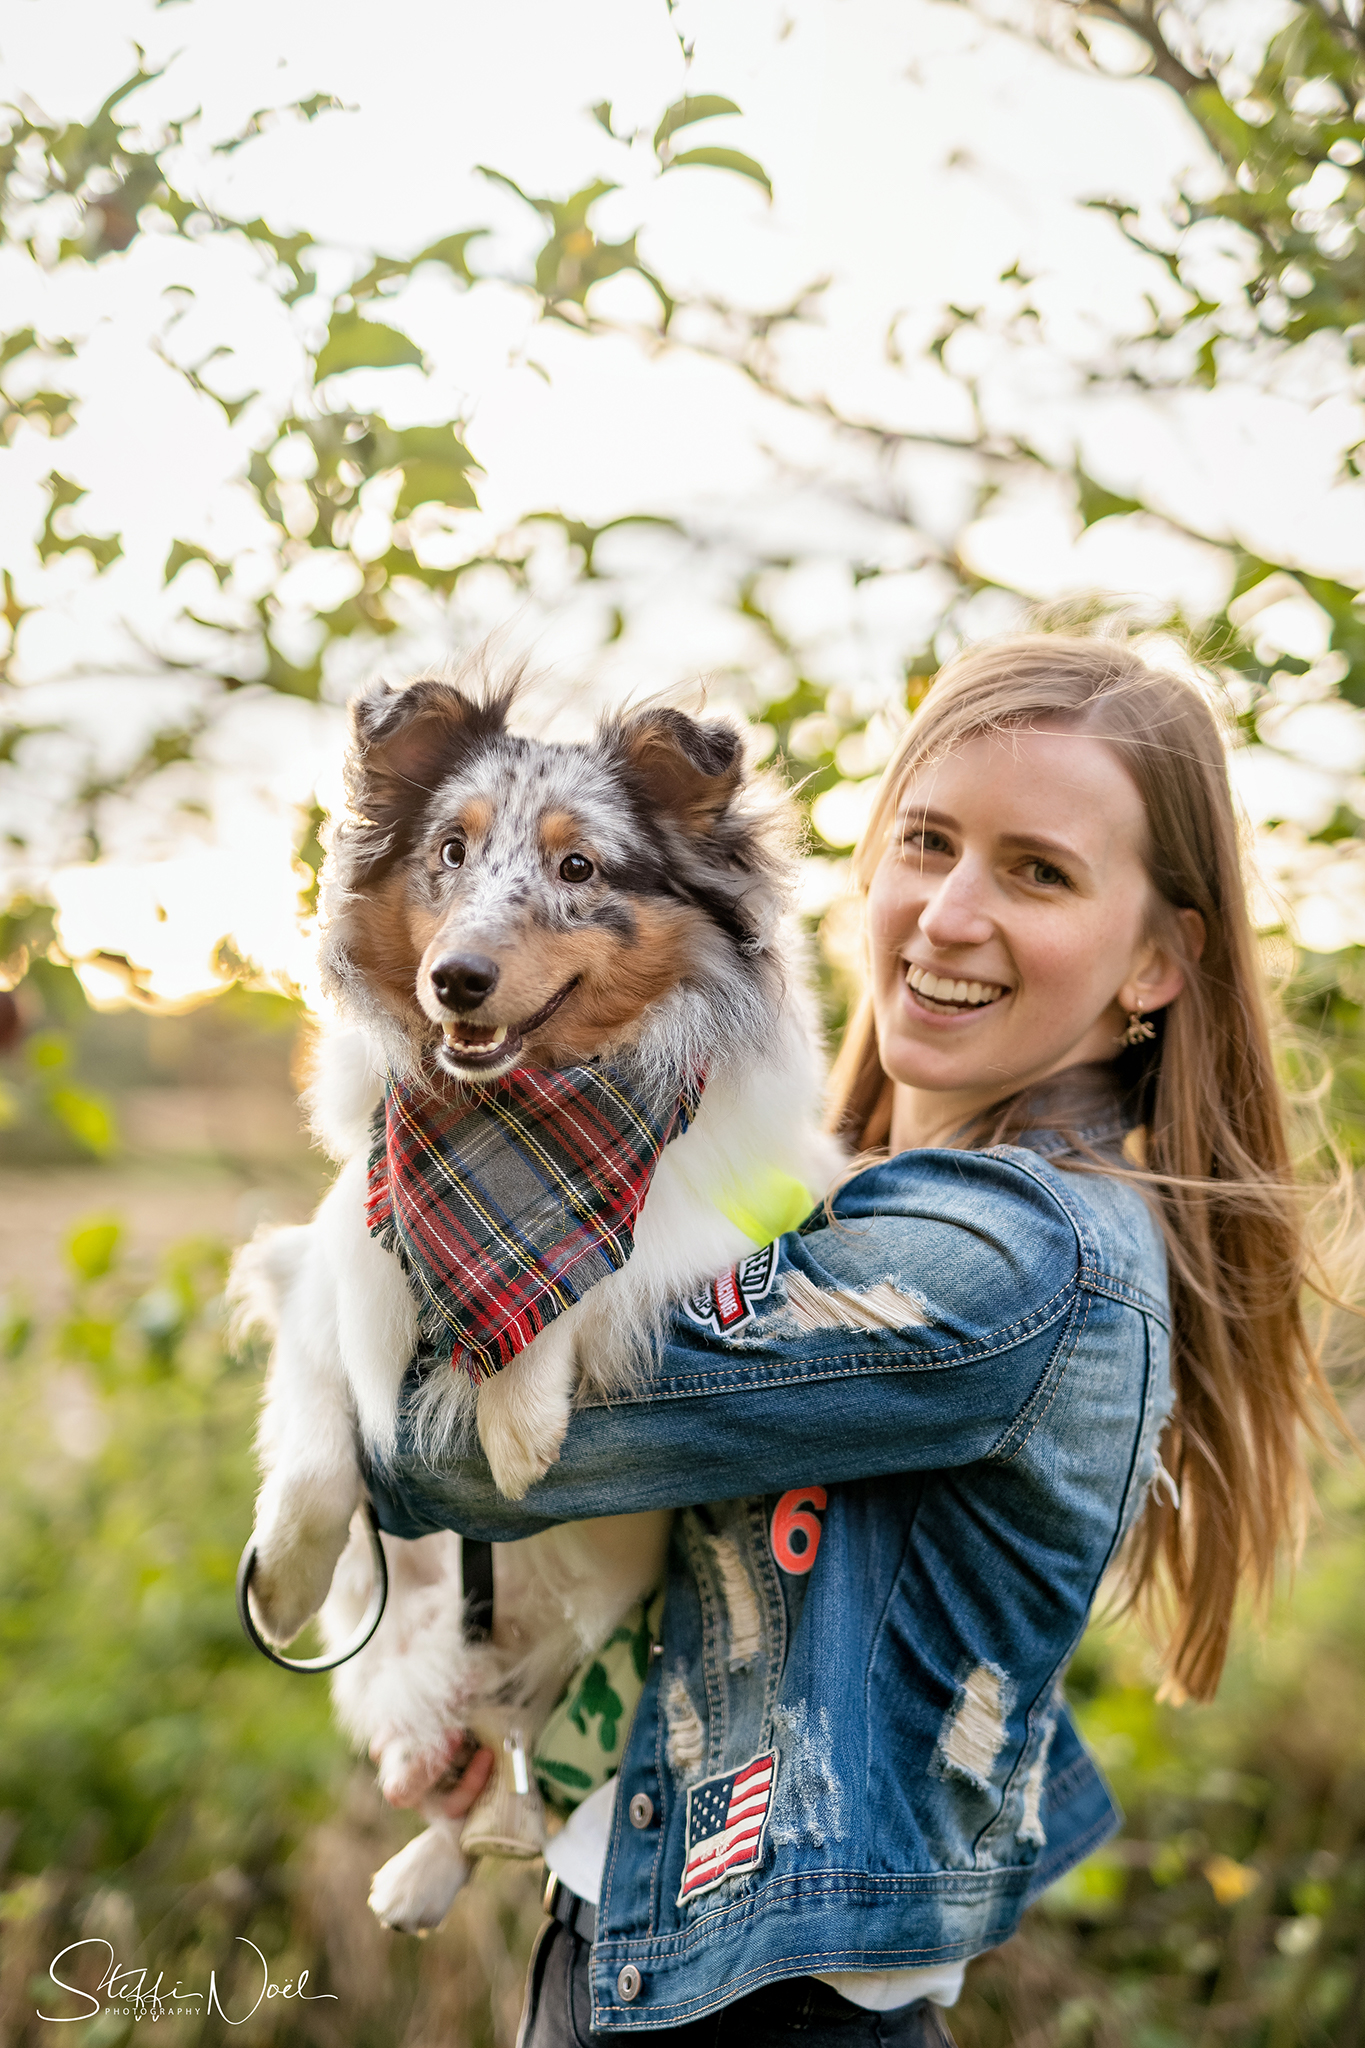 Magalie organiseerde wandeling voor hondenliefhebbers (Oosterzele) - Het Nieuwsblad